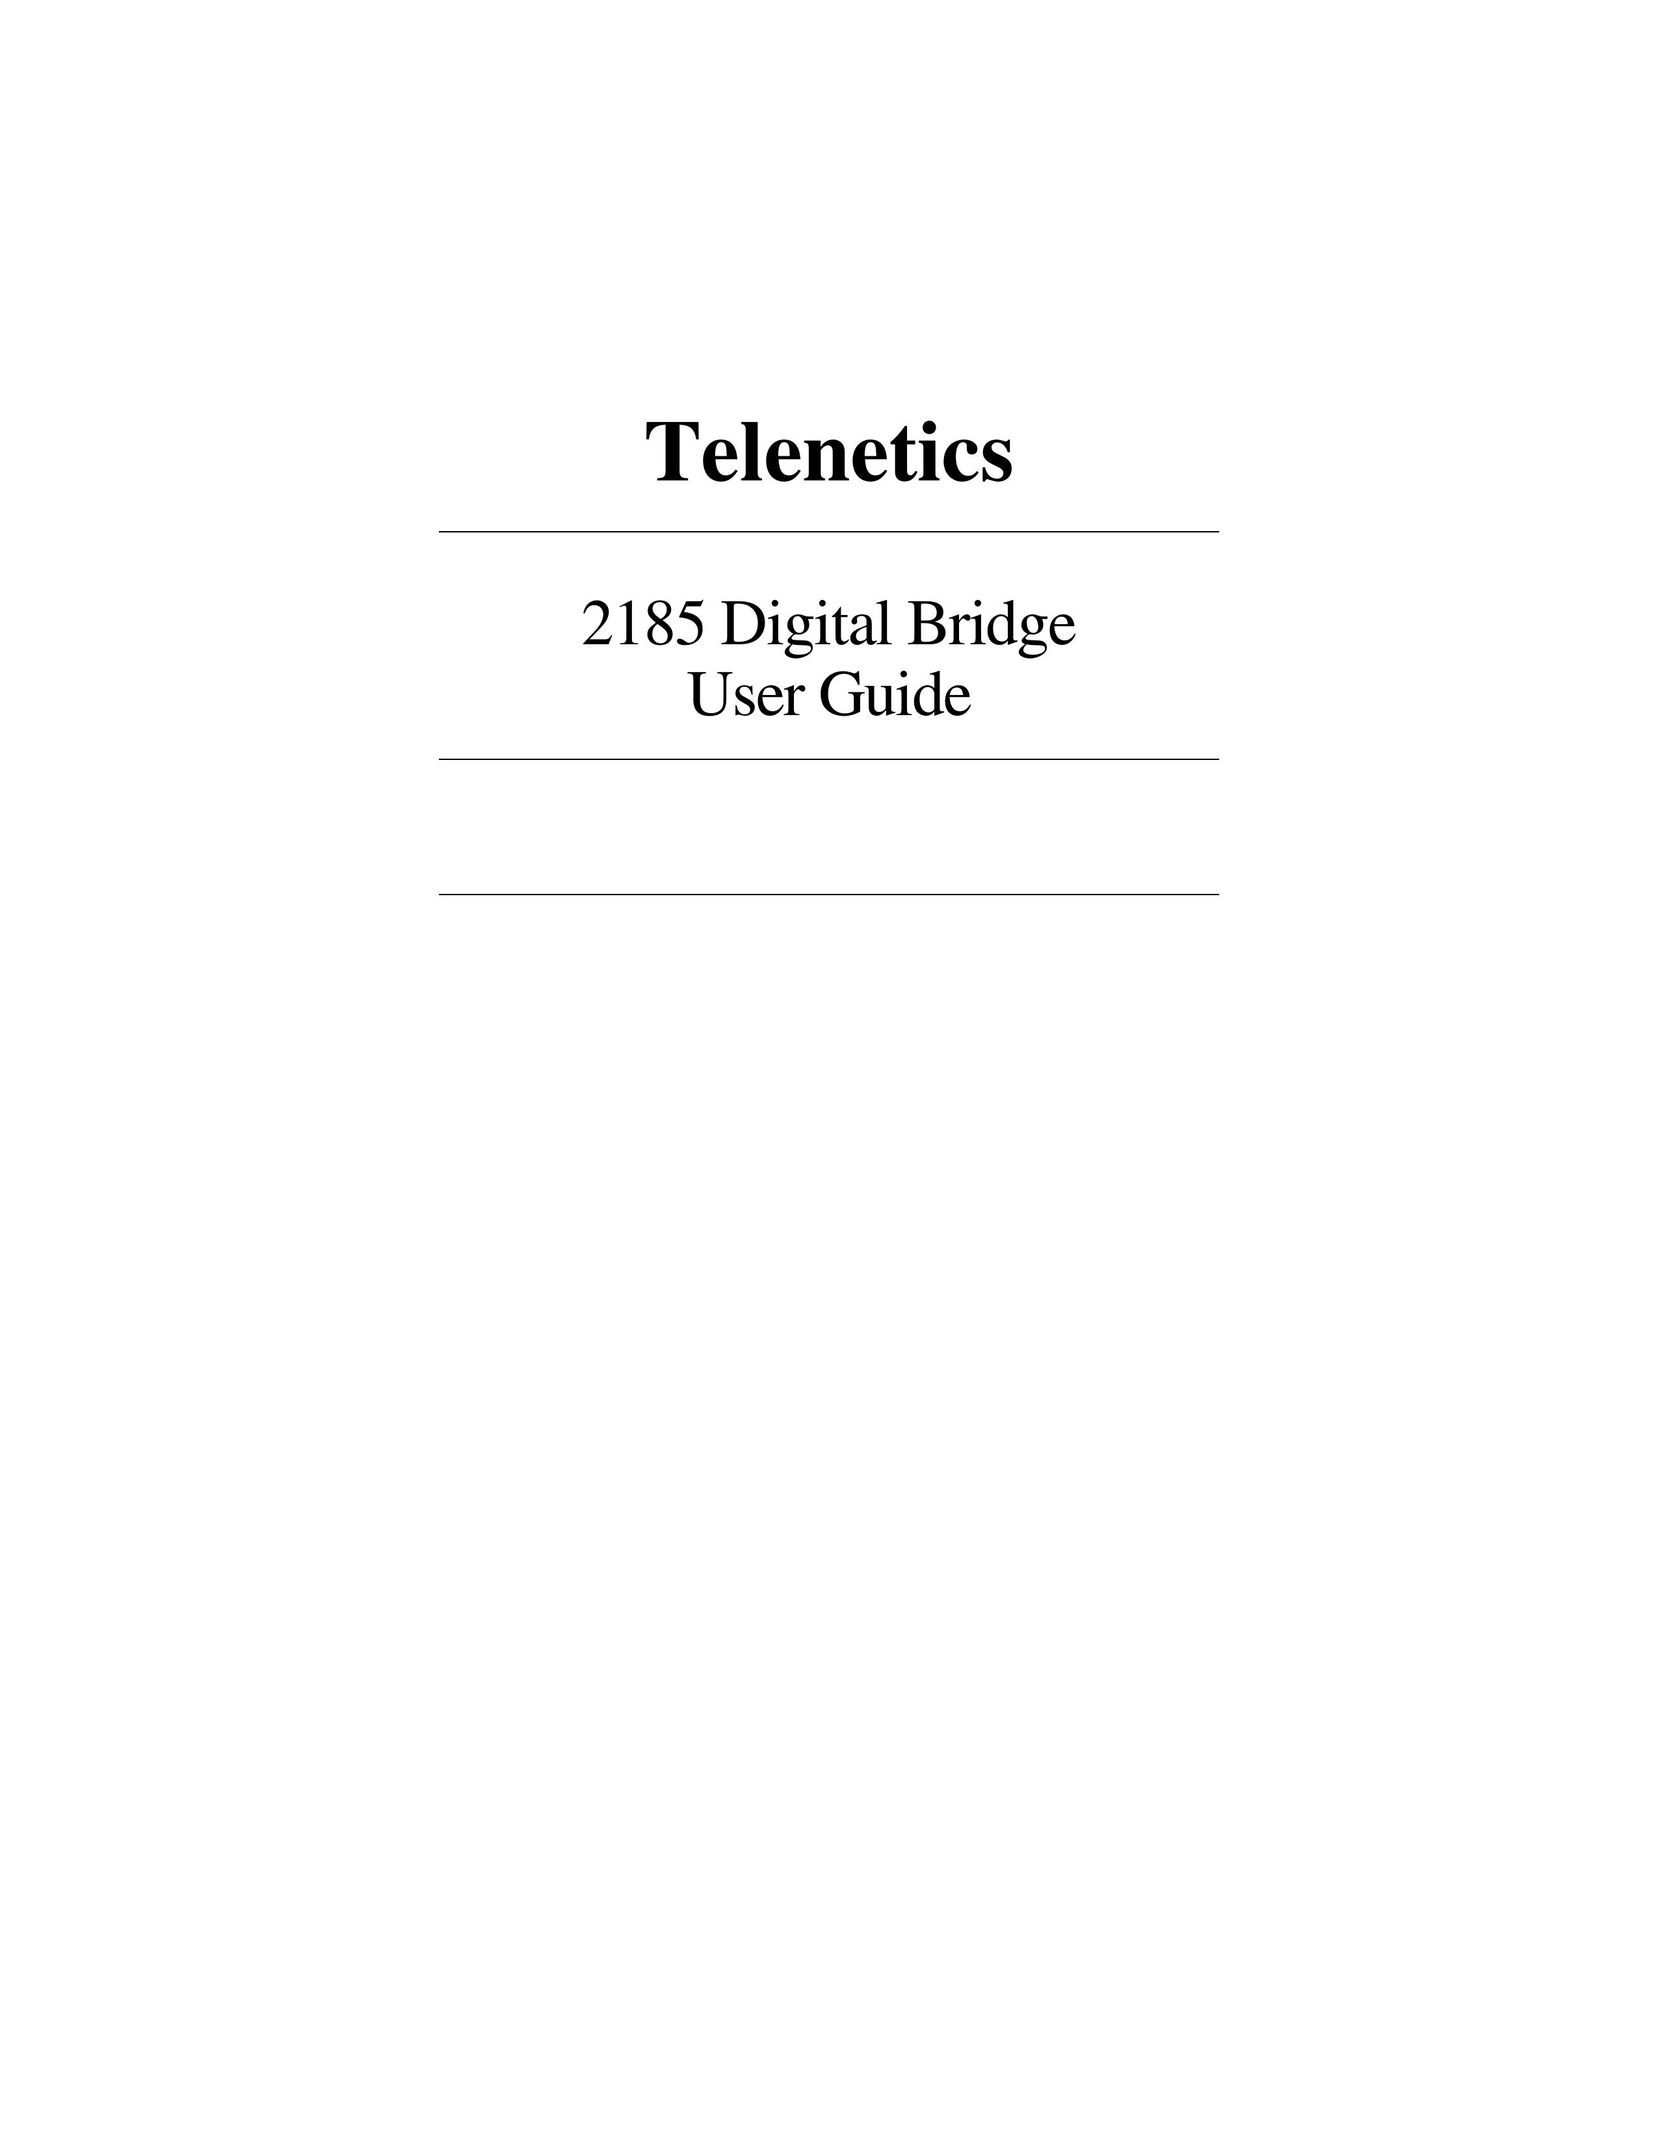 Telenetics 2185 Network Router User Manual